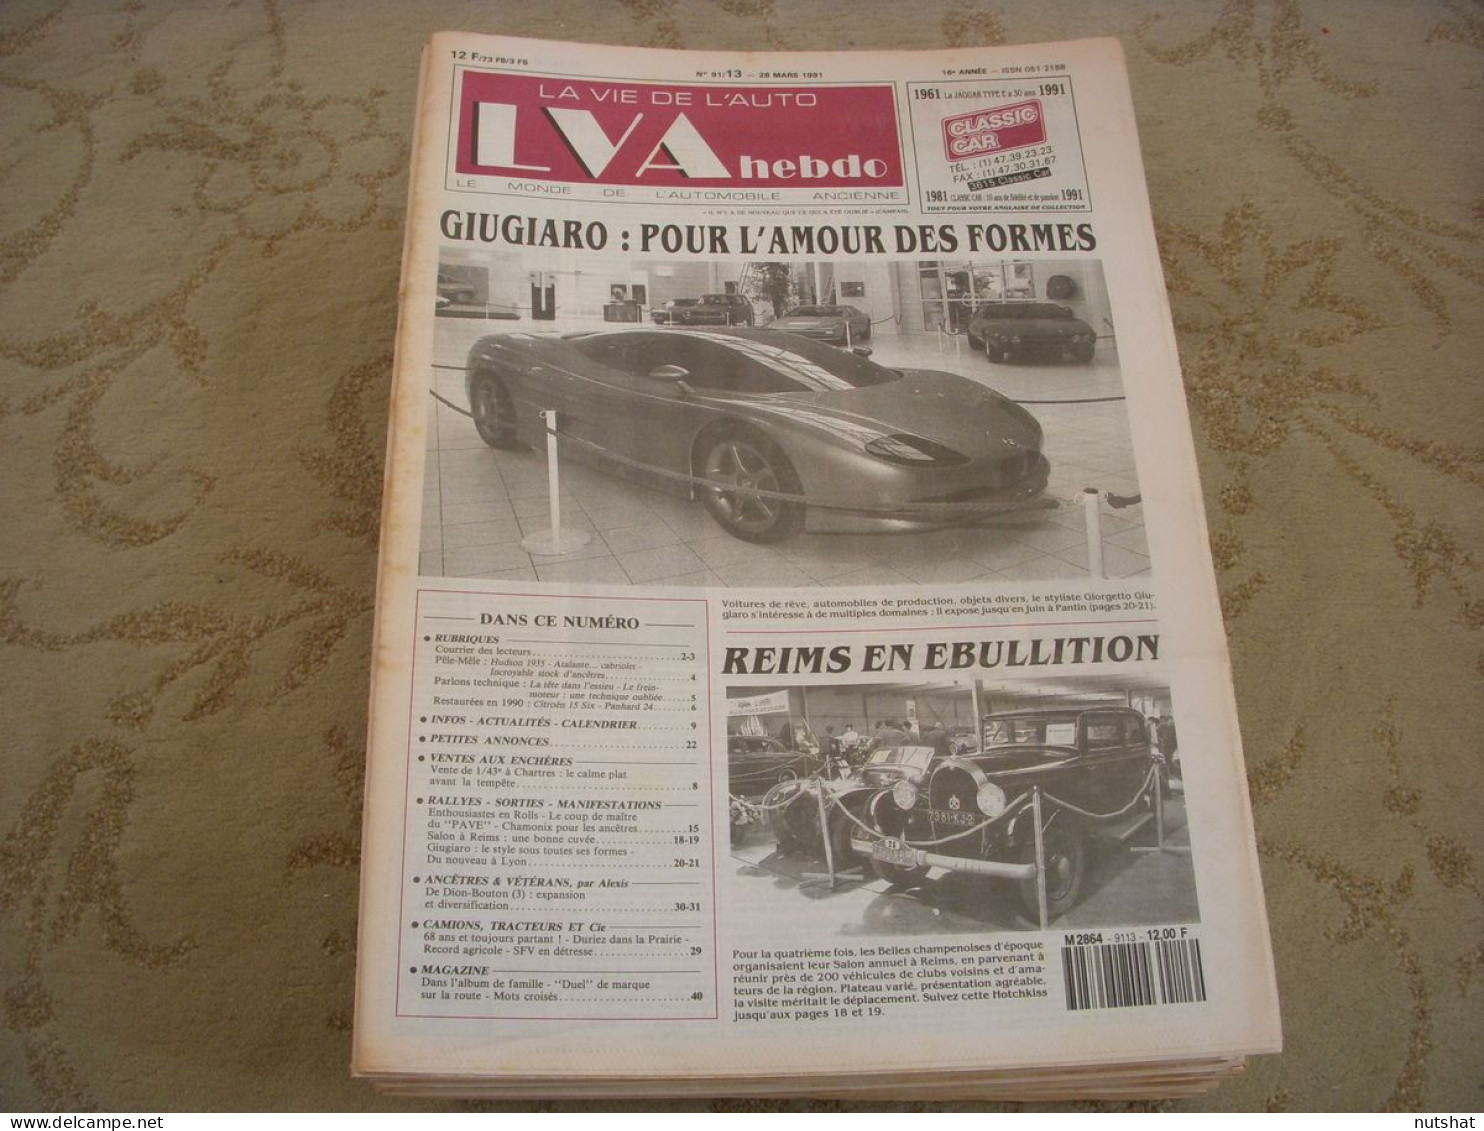 LVA VIE De L'AUTO 91/13 03.1991 De DION BOUTON CAMIONS TRACTEURS DURIEZ GIUGIARO - Auto/Moto